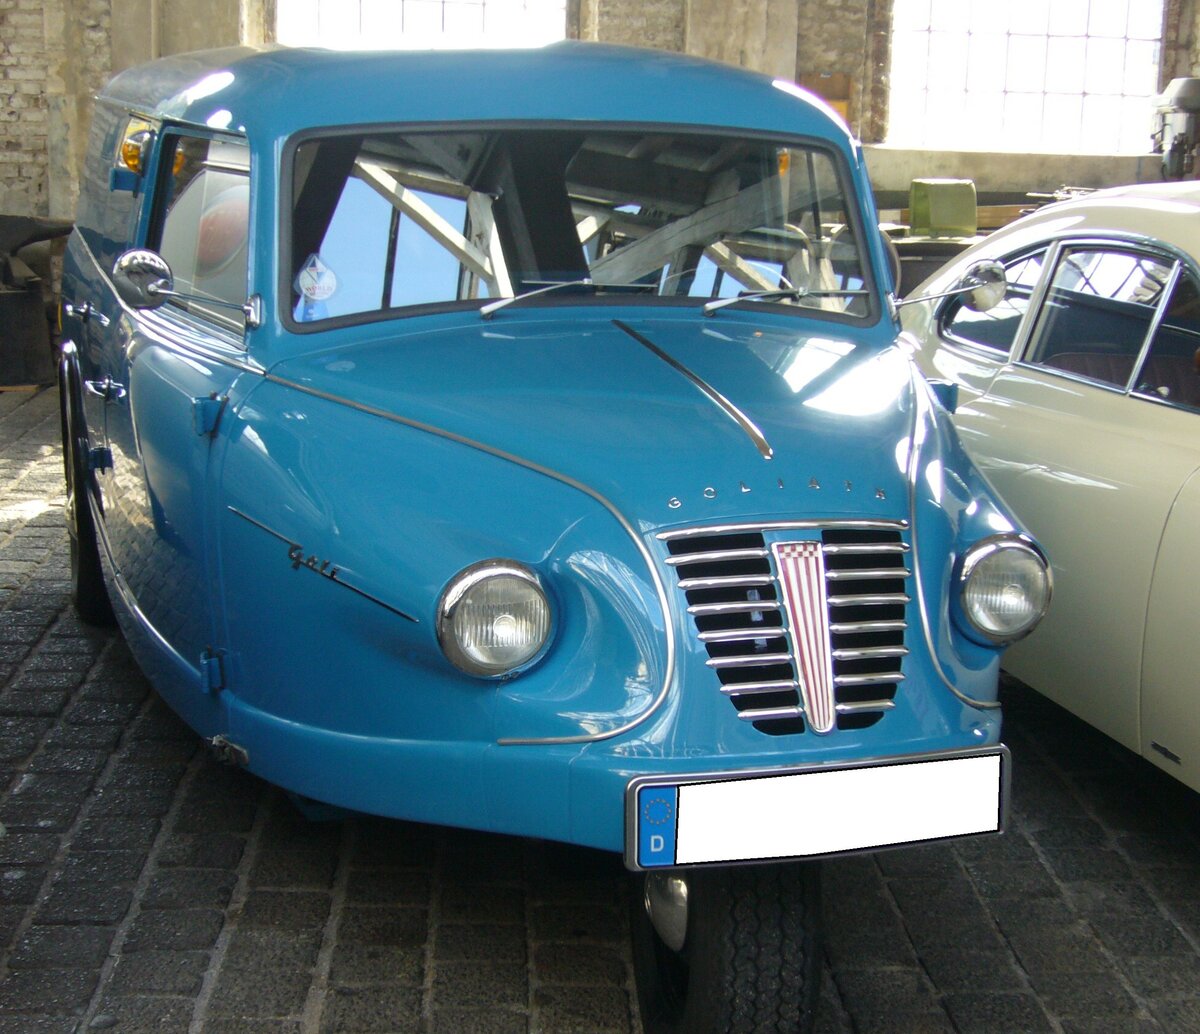 Goliath Goli Kastenwagen aus dem Jahr 1959. Der Goliath Goli Kastenwagen, wurde von 1955 bis 1961 produziert. Die Goli-Modelle waren die letzten klassischen Dreiräder aus dem Hause Borgward. Insgesamt wurden in Bremen 9.904 Goli-Dreiräder produziert. Eine solcher Goliath-Goli Kastenwagen kostete exakt DM 4.200,00. Der Zweizylinderzweitaktmotor leistete bis 1957 16 PS aus einem Hubraum von 493,5 cm³. Danach reduzierte sich der Hubraum auf 461 cm³ Hubraum und die Leistung sank auf 15 PS. 50. Jahrestreffen der Borgward I.G. e.V. an der  Alten Dreherei  in Mülheim an der Ruhr.